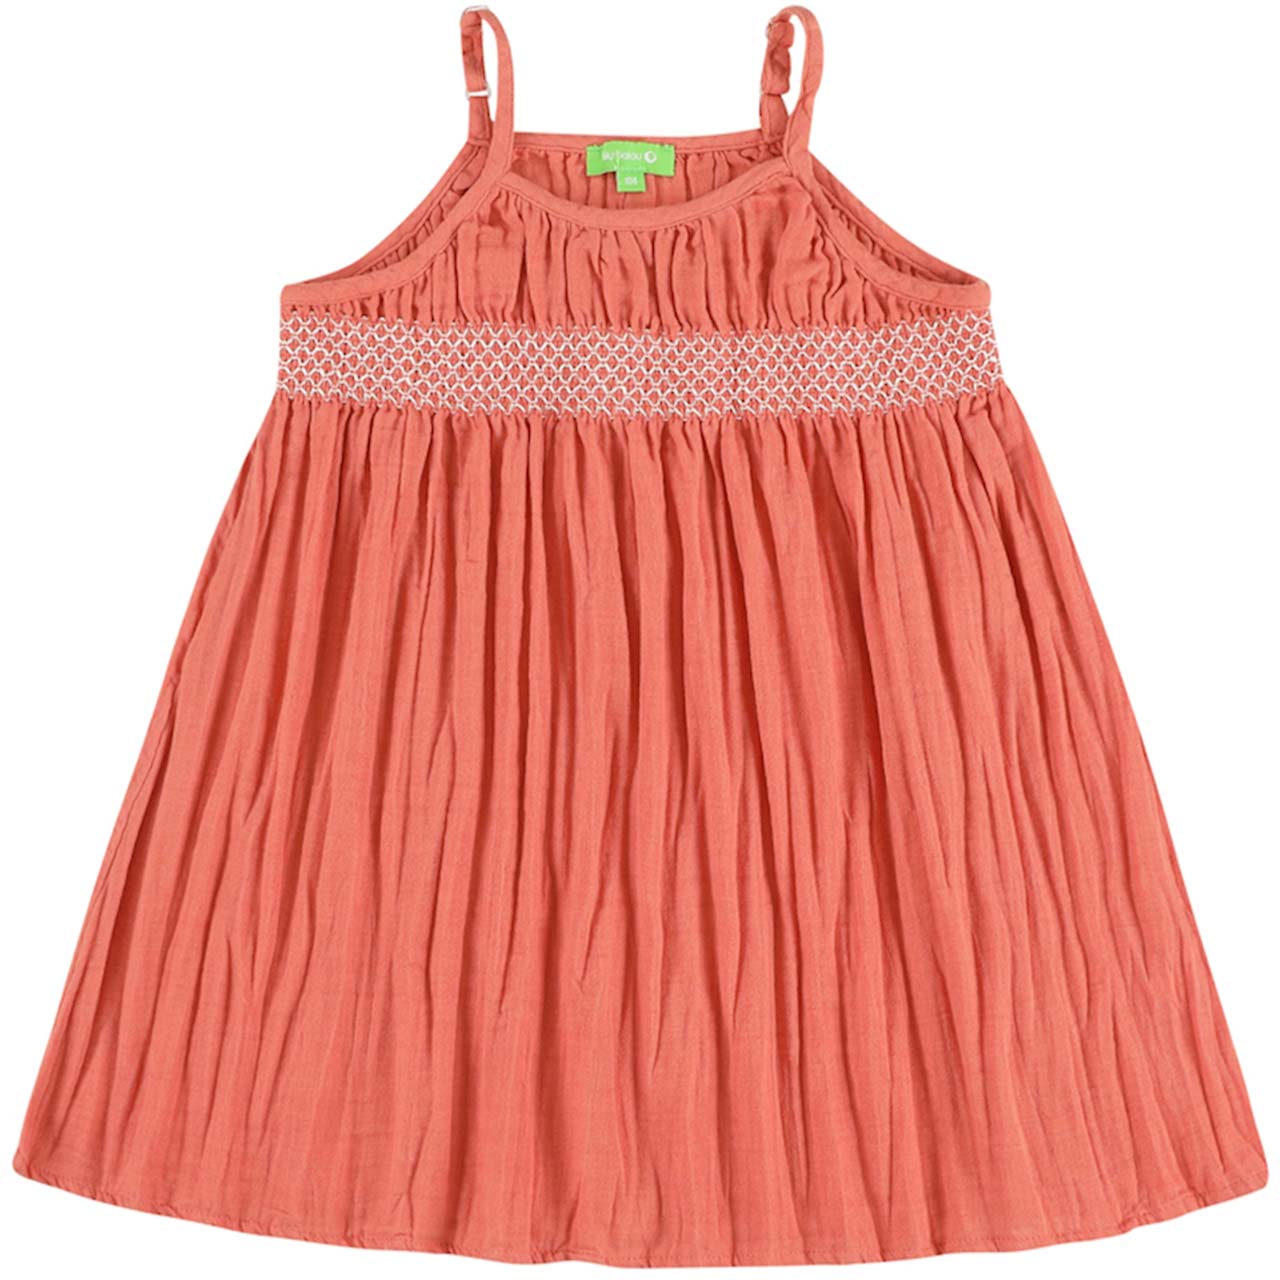 Sommer Kleid Musselin Spaghettiträger rosa